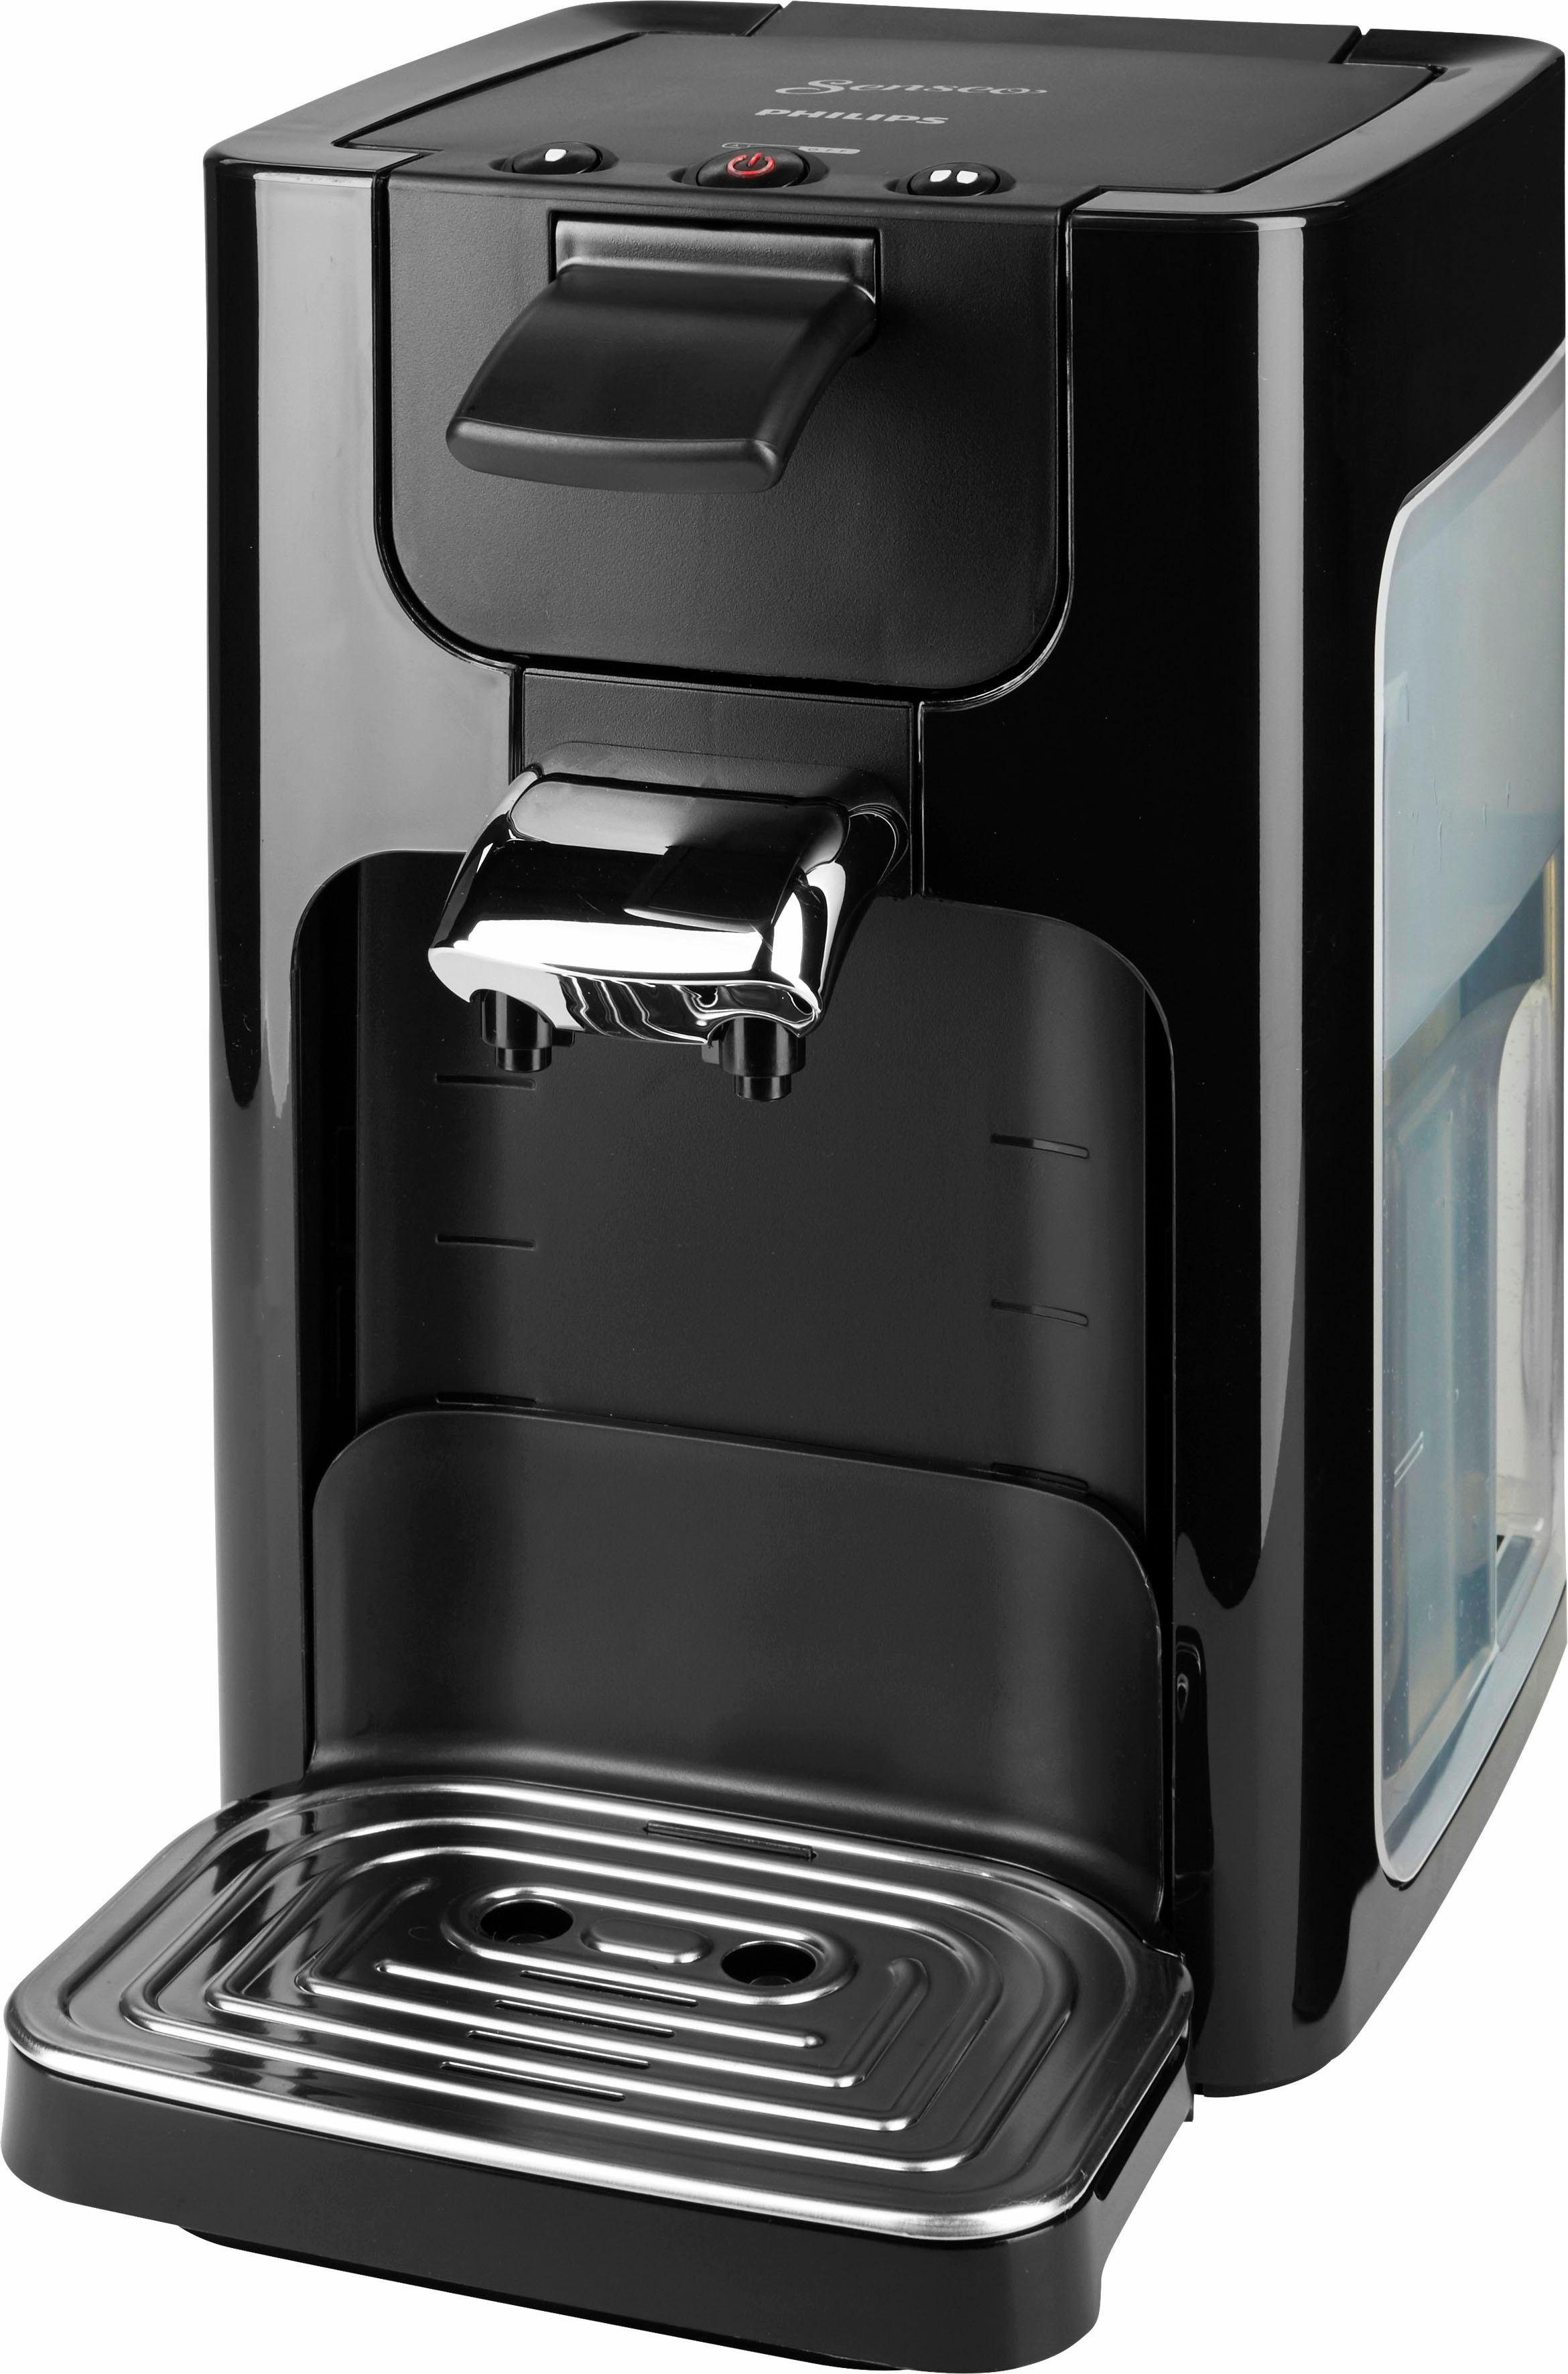 Senseo Koffiepadautomaat HD7865/60, inclusief toebehoren ter waarde van € 14,- online bestellen |